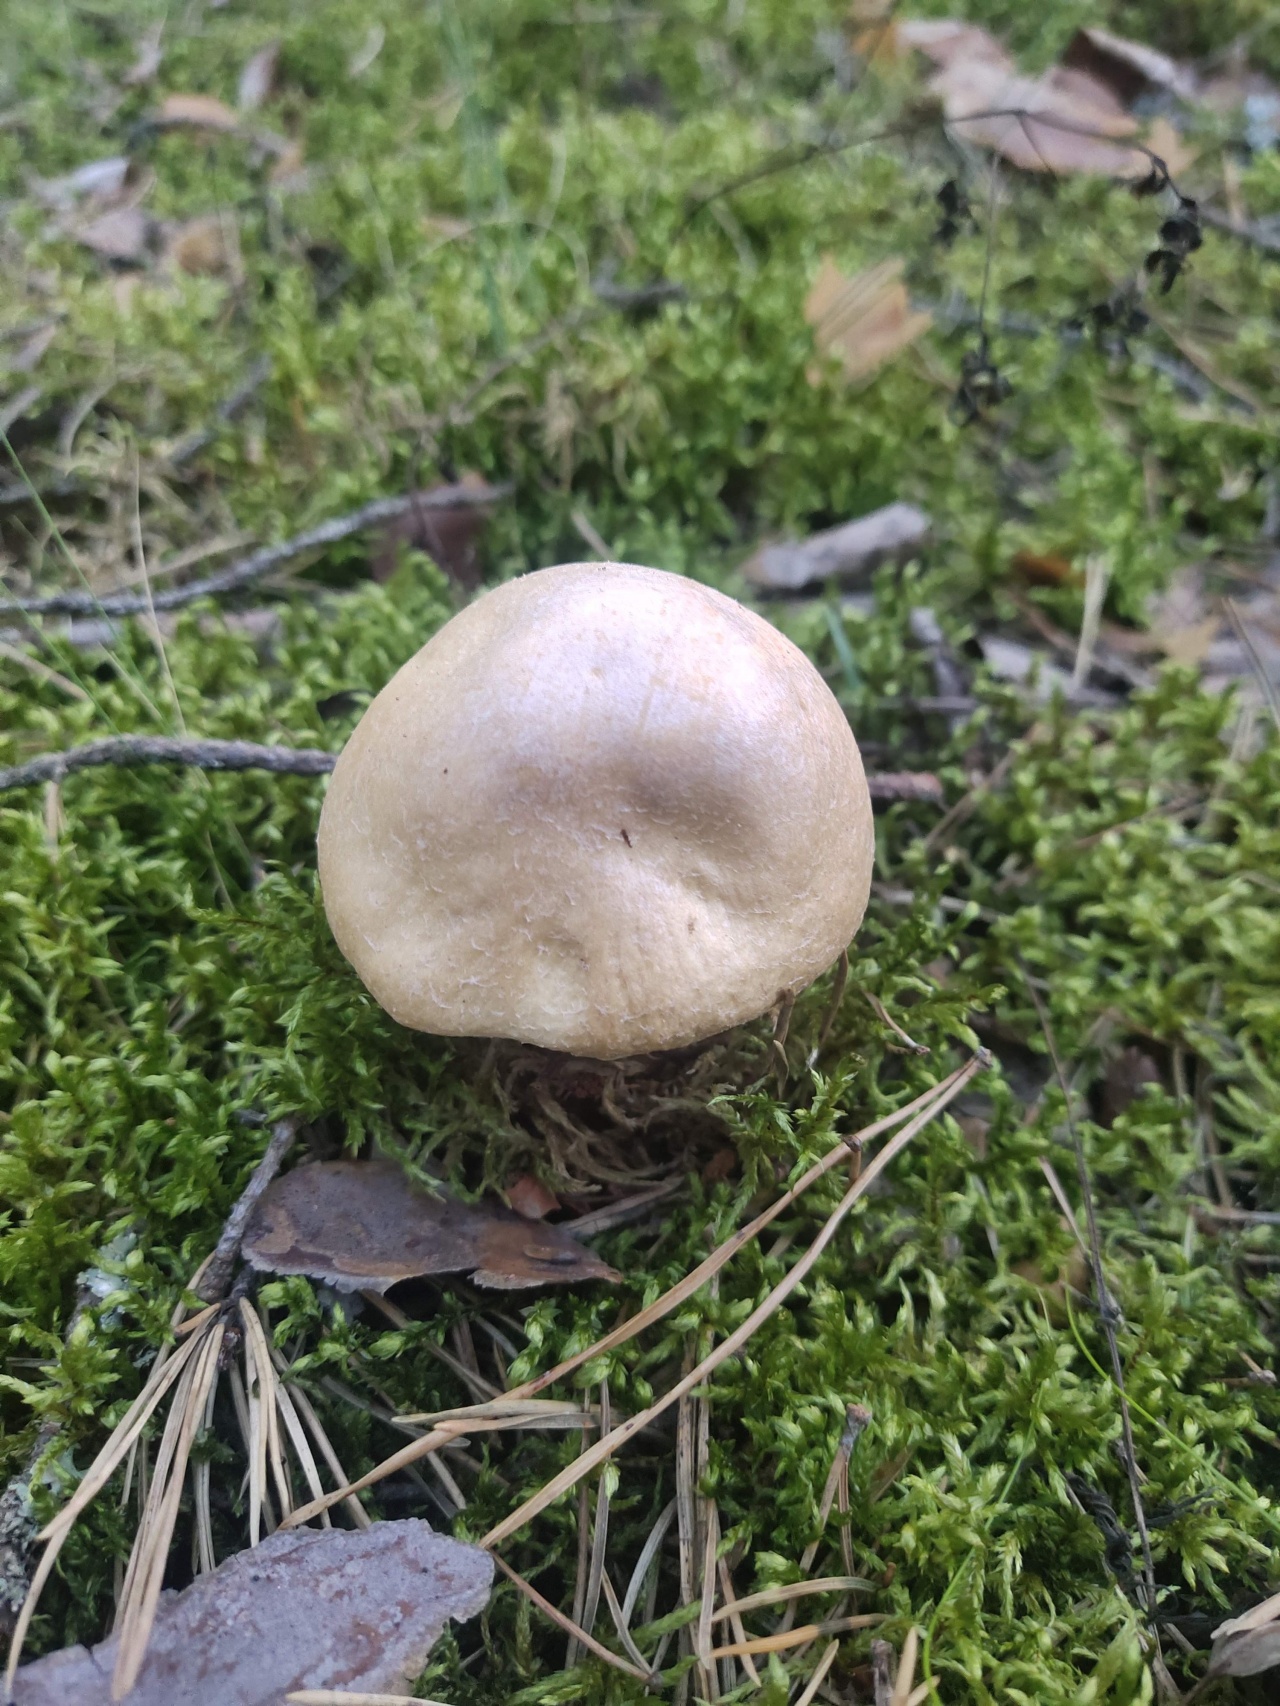 Распознавание грибов по фото